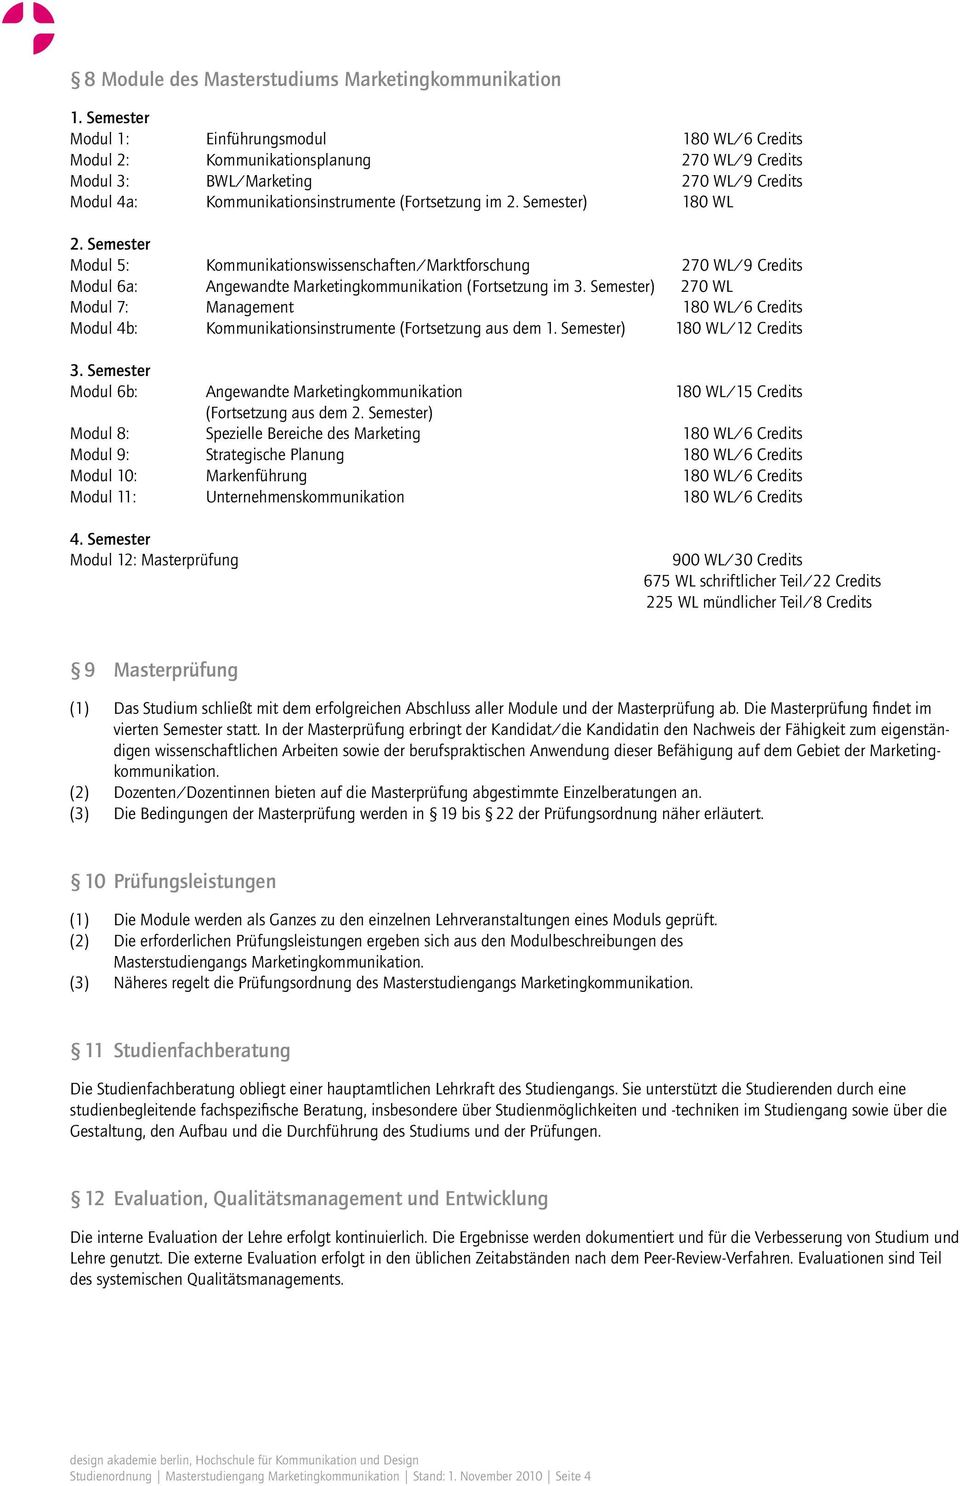 Semester) 180 WL 2. Semester Modul 5: Kommunikationswissenschaften/Marktforschung 270 WL/9 Credits Modul 6a: Angewandte Marketingkommunikation (Fortsetzung im 3.